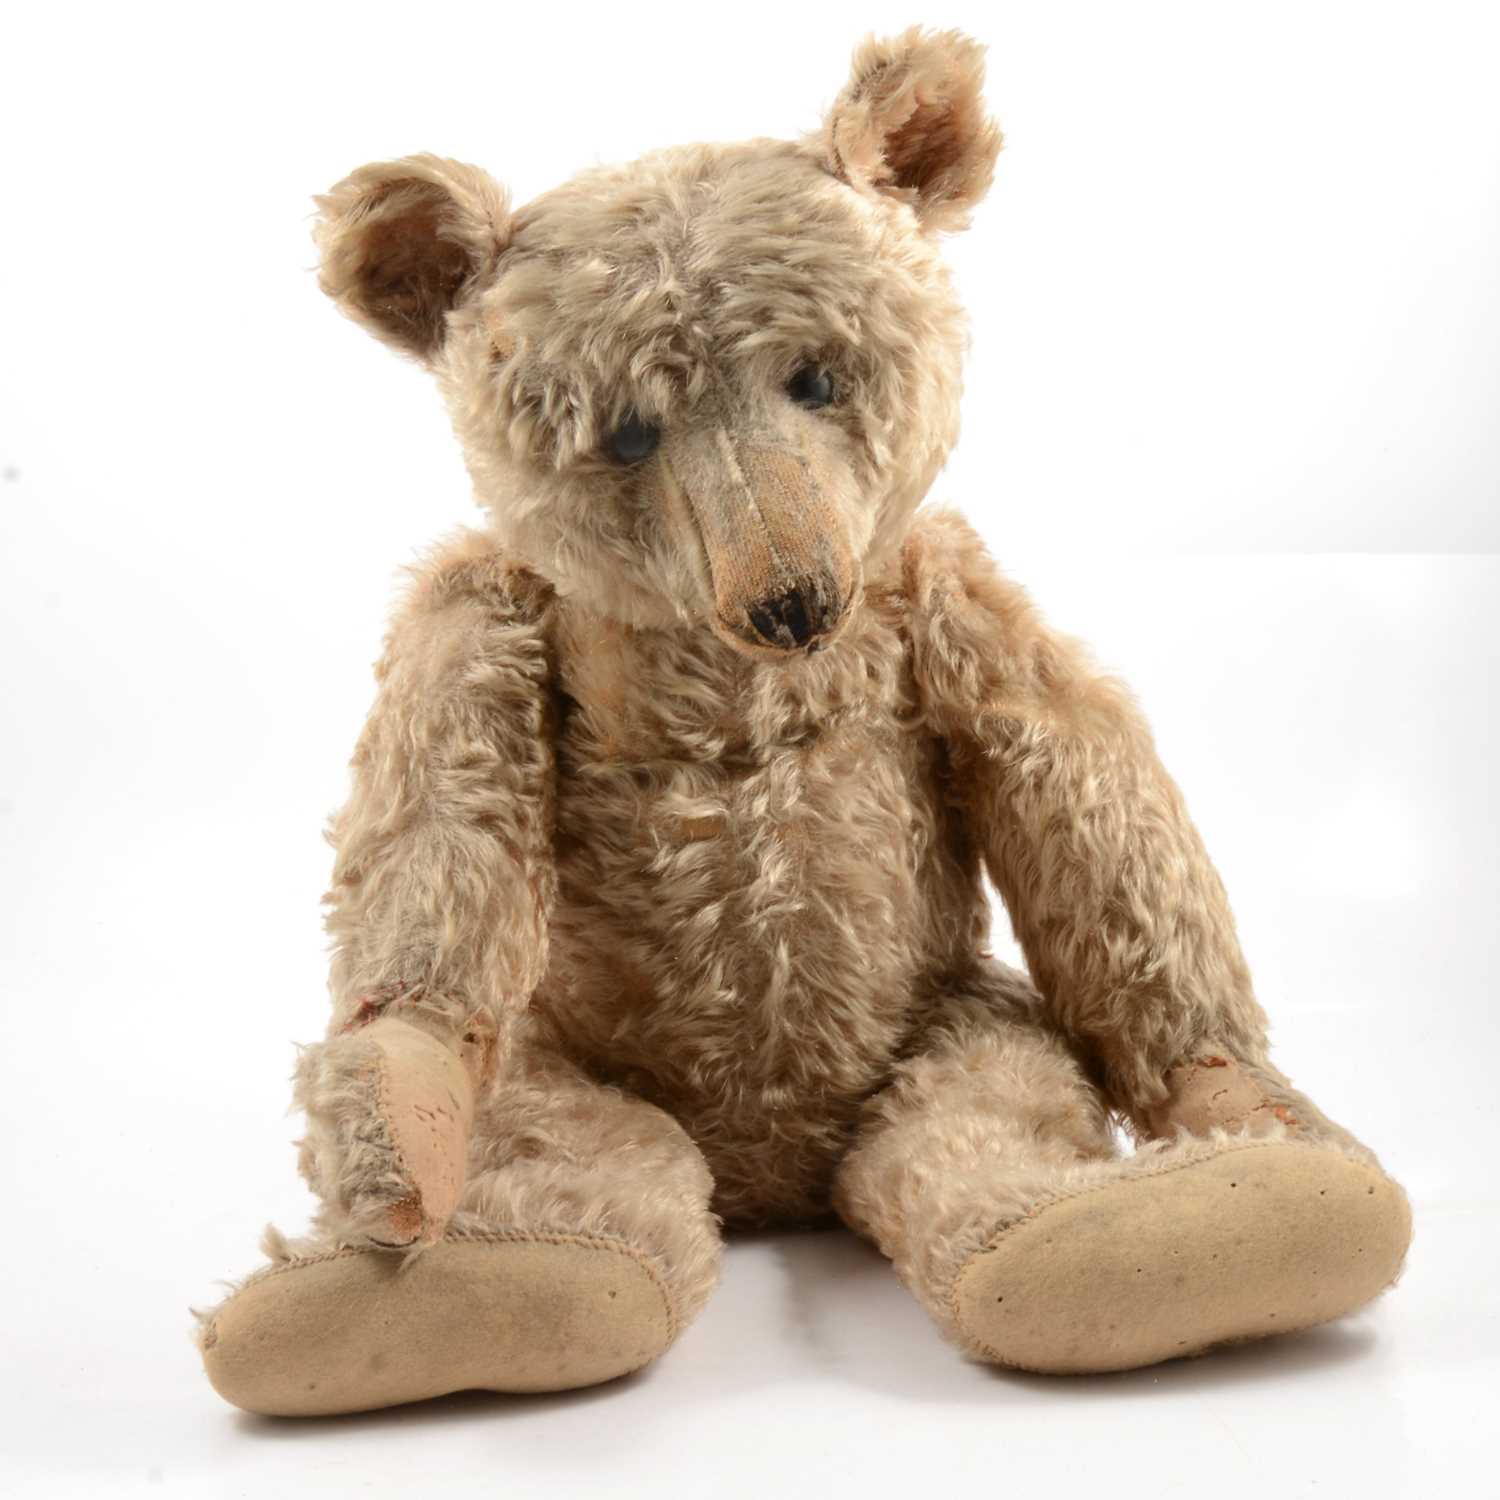 250 - Steiff Teddy bear, early 20th century, with original Steiff button to ear, long mohair fur